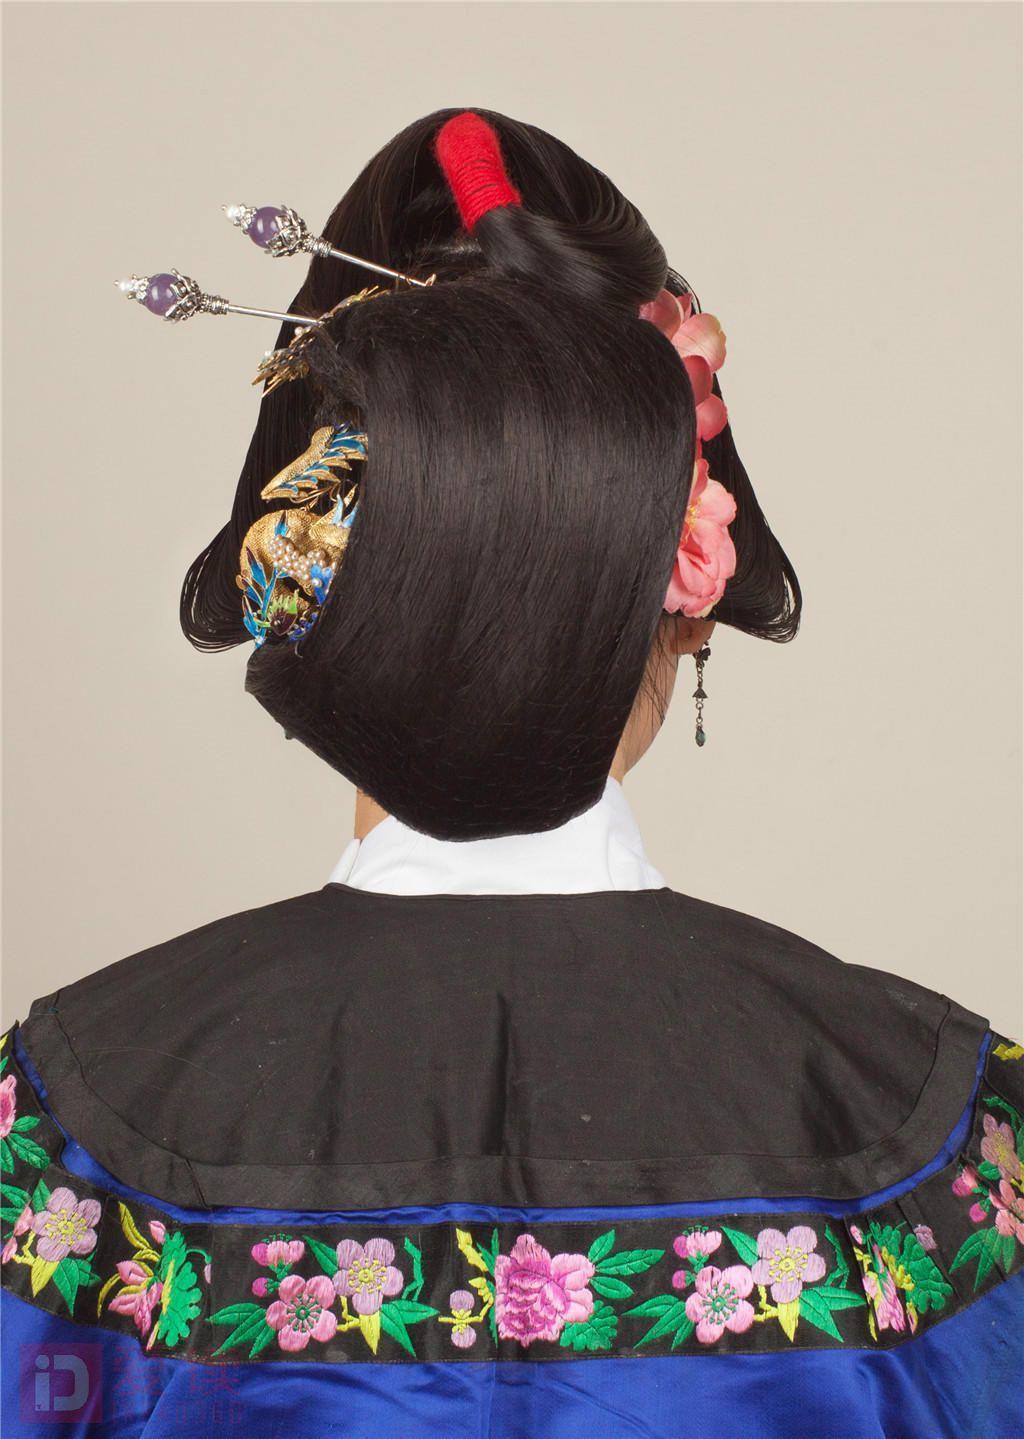 古装影视造型之清朝民间女子造型一 - 职业技能培训课堂 - 爱读